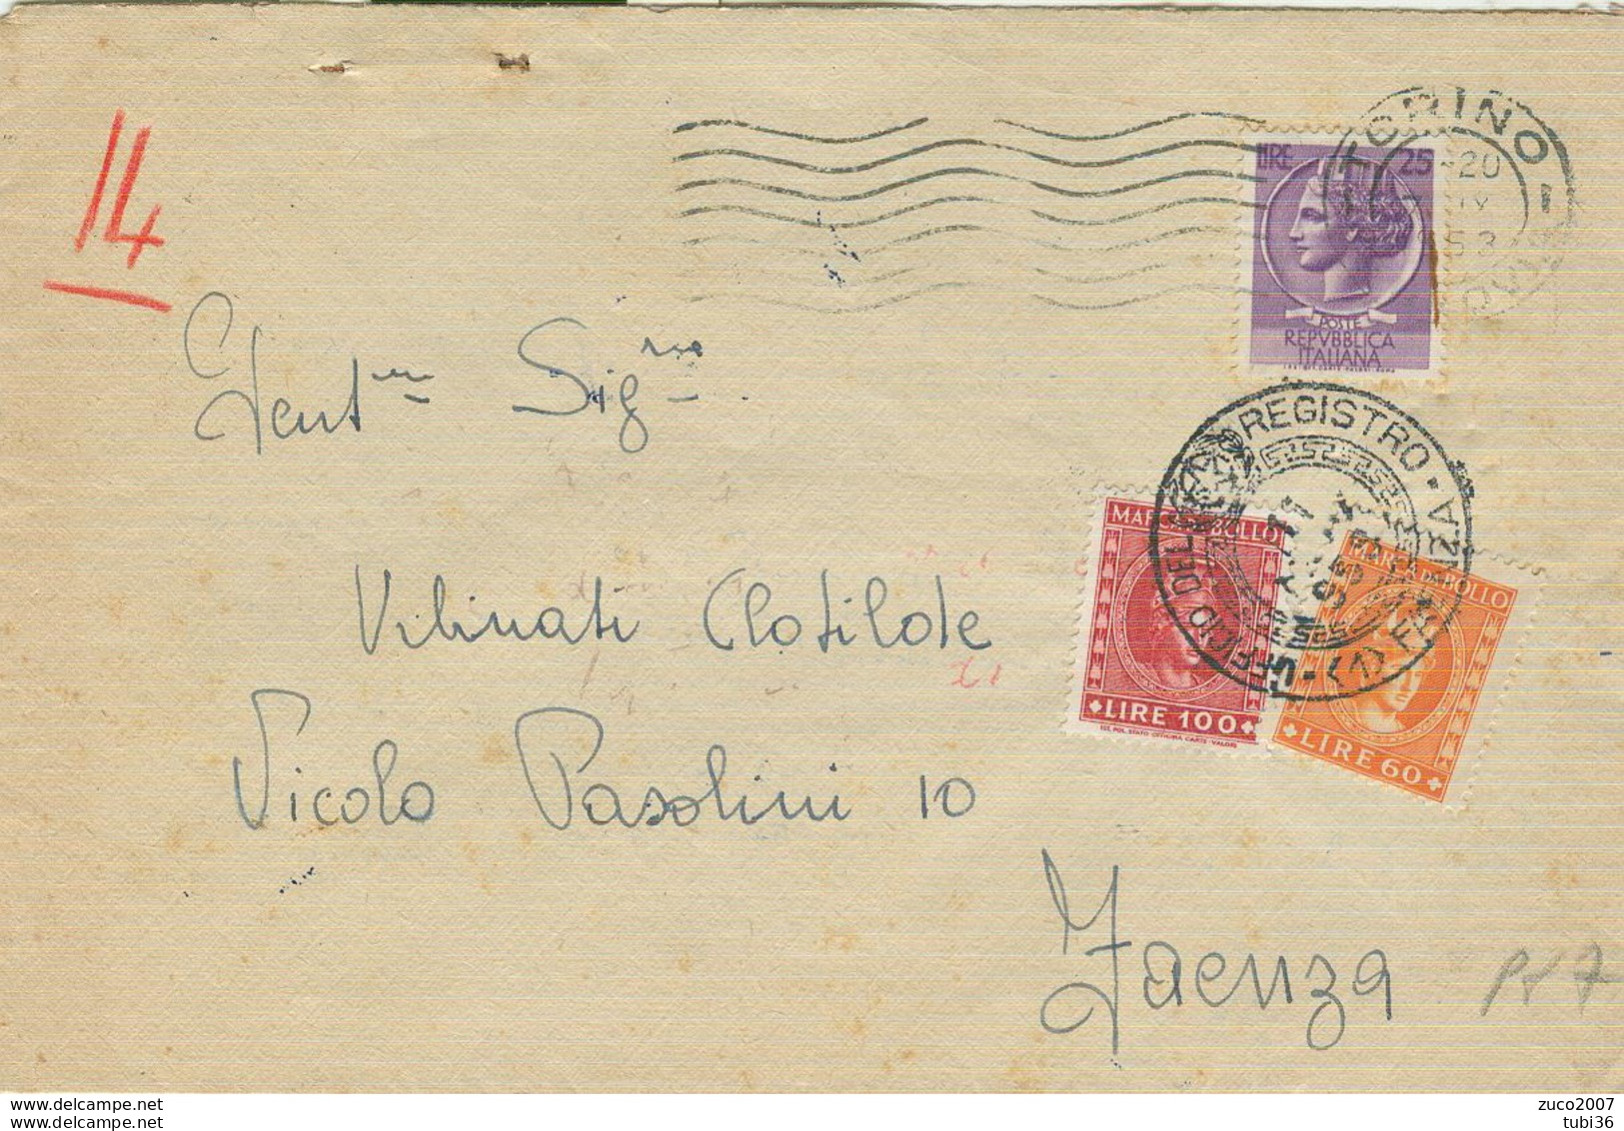 SIRACUSANA £.25,TARIFFA LETTERA, 1953,SU BUSTA USO FISCALE CON MARCHE DA BOLLO £.100+60,TIMBRO POSTE TORINO-FAENZA - Fiscales